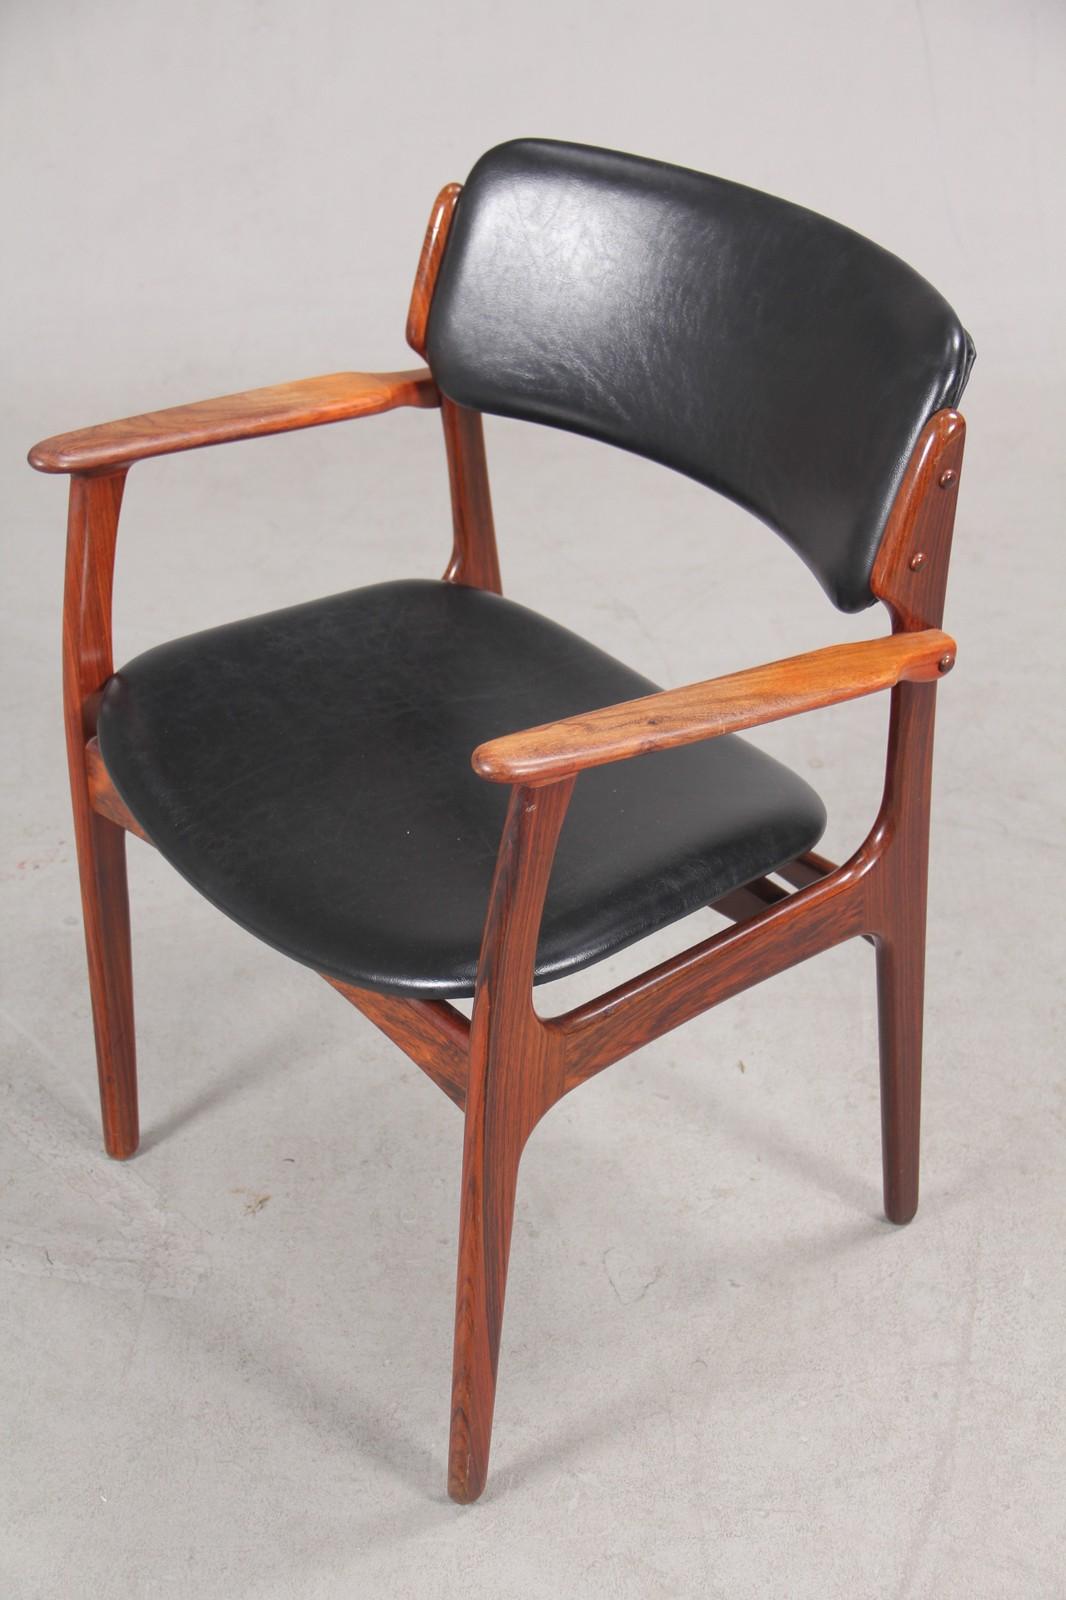 Erik Buch vollständig restaurierte Sessel aus Palisanderholz mit ausgezeichneten Holzarbeiten, die von gutem Design und Handwerkskunst zeugen.

Die Stühle sind aus massivem Palisanderholz gefertigt und verfügen über die für Erik Buch